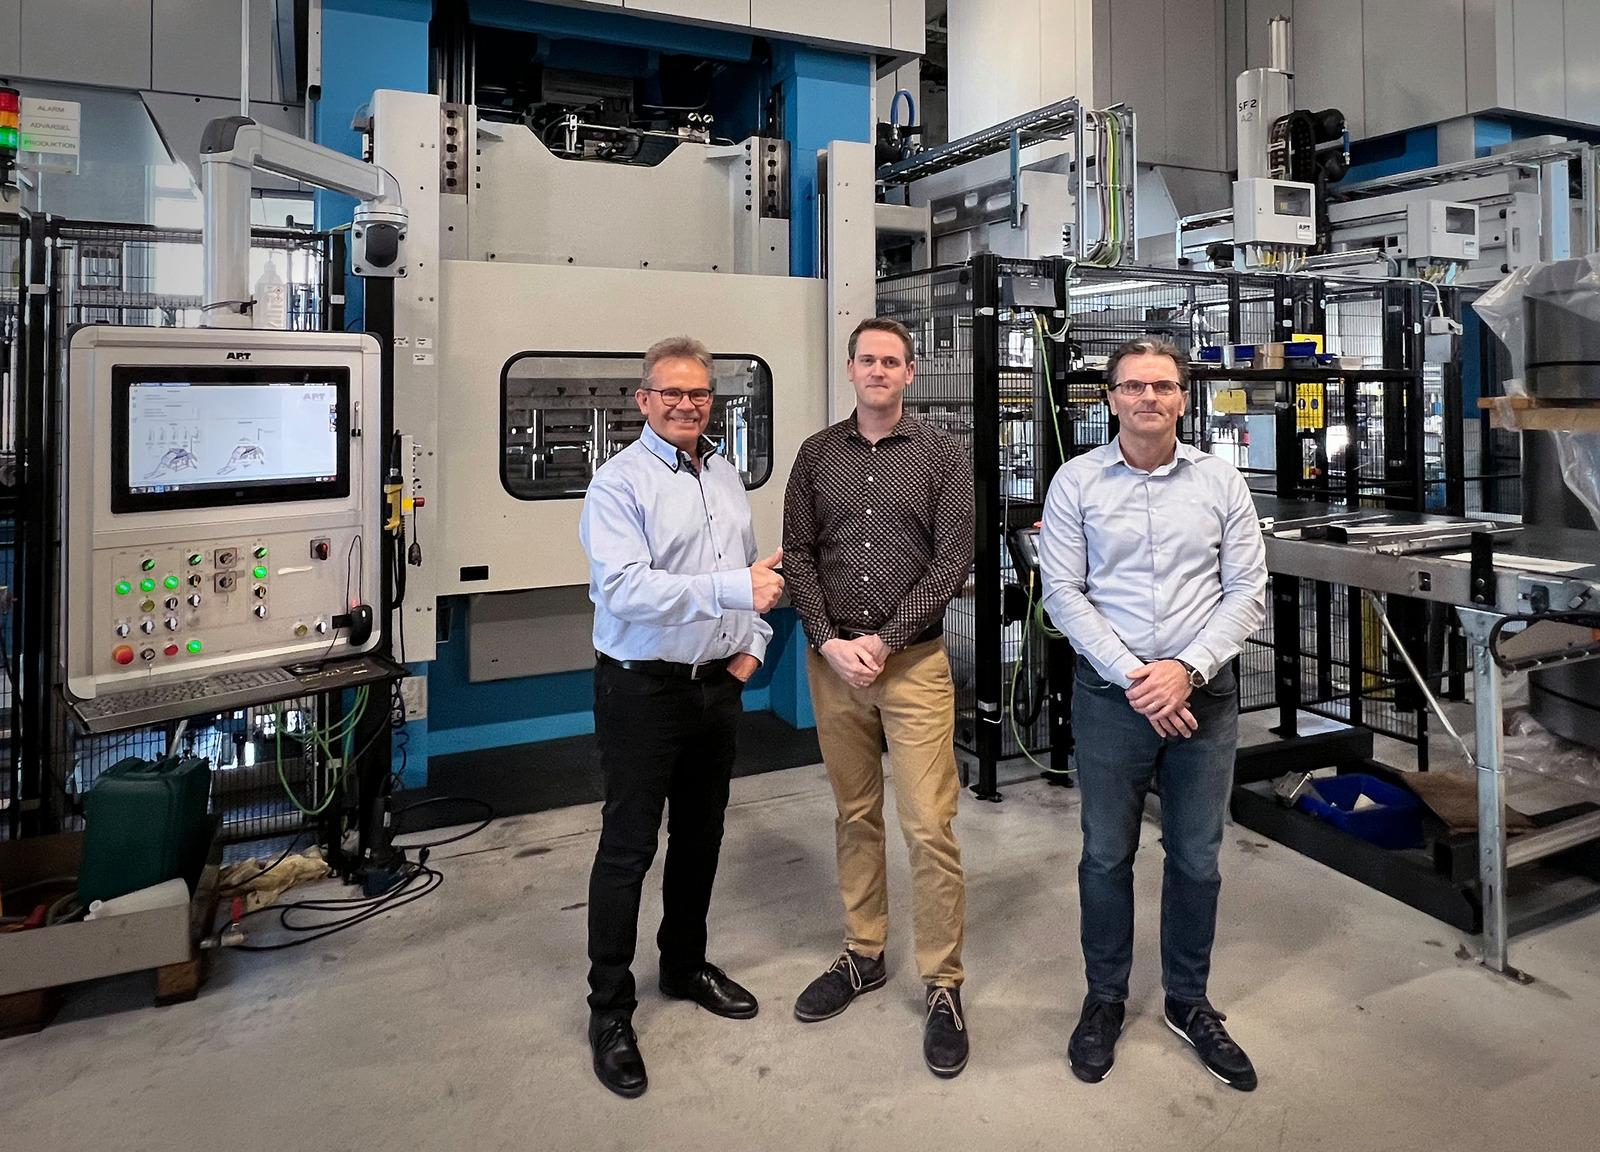 デンマーク・オールボーの Mekoprint Mechanics 社は、AP&T 社よりさらに別の生産ラインを導入し、製造容量を拡大予定。左から、AP&T 社ピーター・カールソン（Peter Karlsson）氏、とMekoprint Mechanics 社テクノロジー・プロダクトマネージャのカールステン・J・メラー（Karsten J. Møller）氏および部門担当役員セレン・ホルンボー（Søren Holmboe）氏。